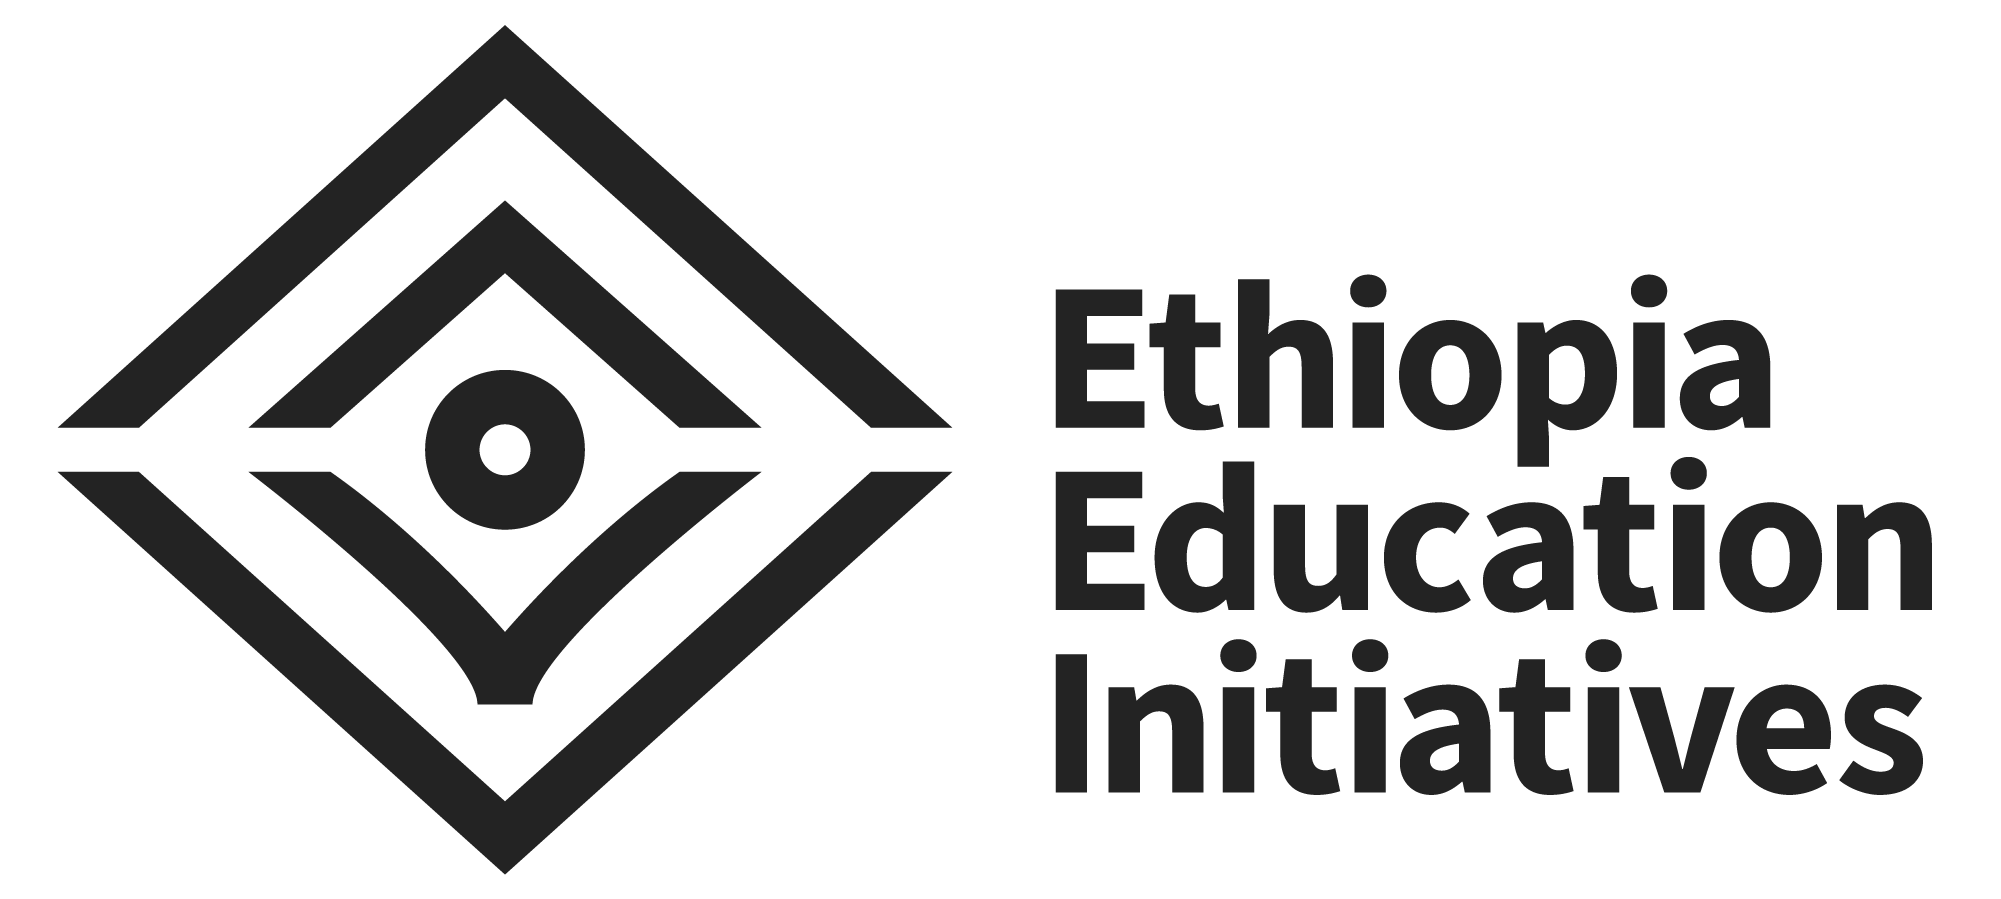 Ethiopia Education Initiatives